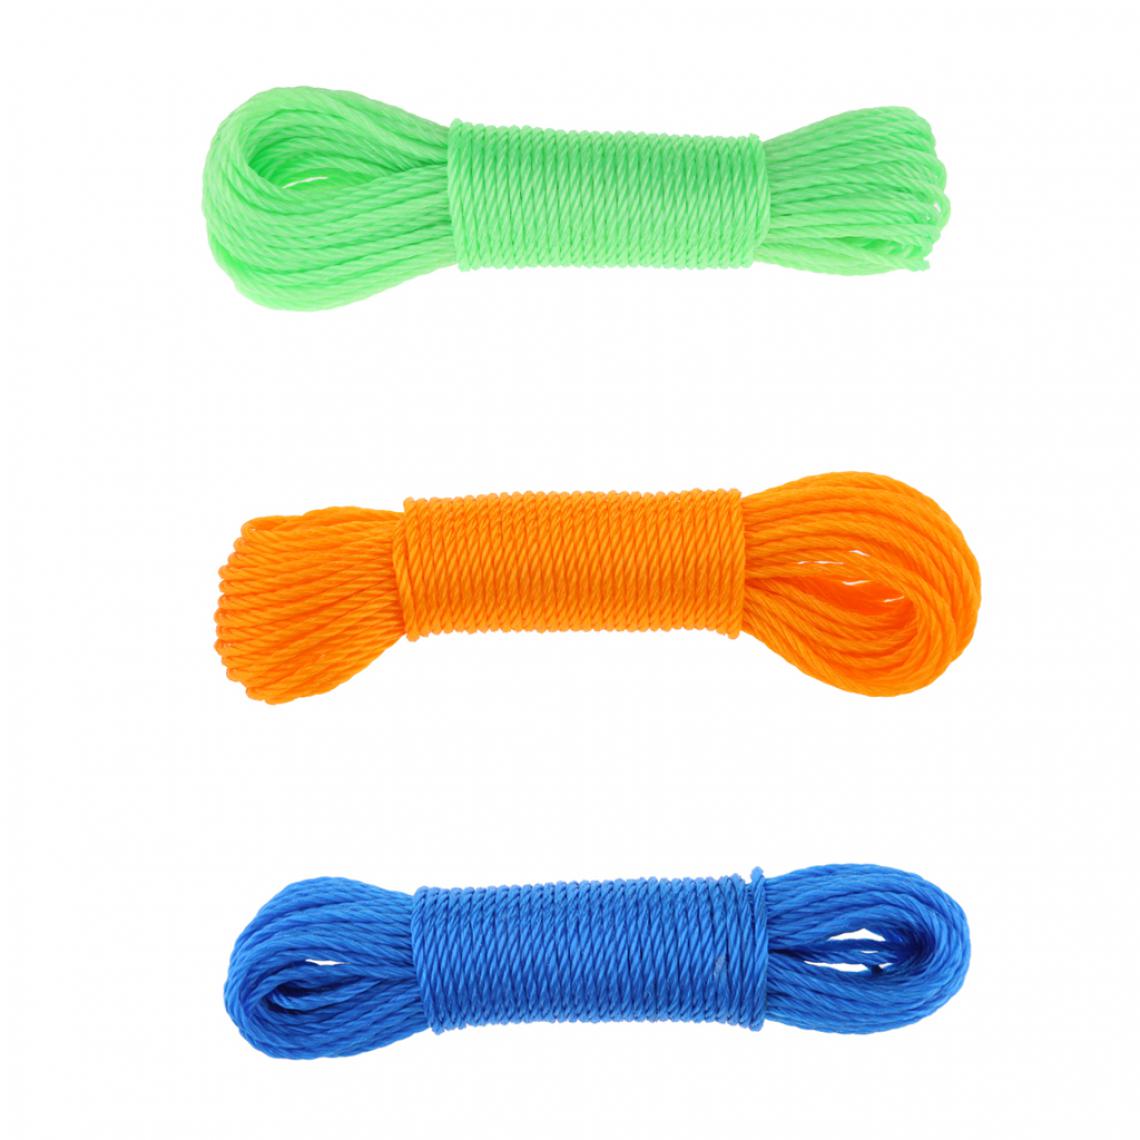 marque generique - 3pcs nylon tressé, corde à linge, corde de camping, lavage, 20m - Corde et sangle